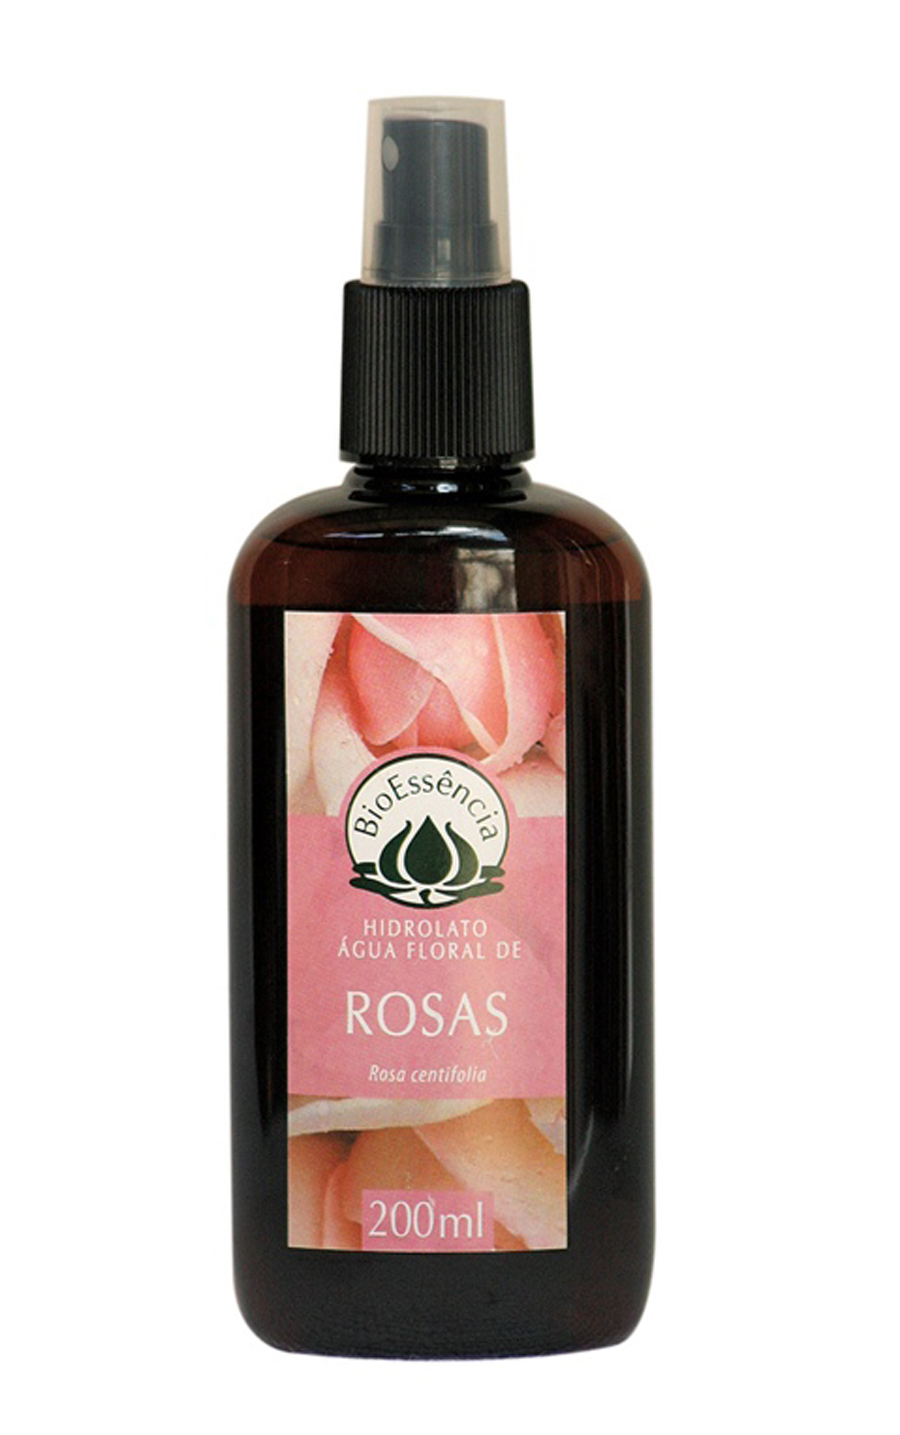 Fresh Depois do banho, para dar aquela sensação gostosa, passo a  água de rosas da Bio Essência. Além de ser refrescante, o cheirinho é ótimo